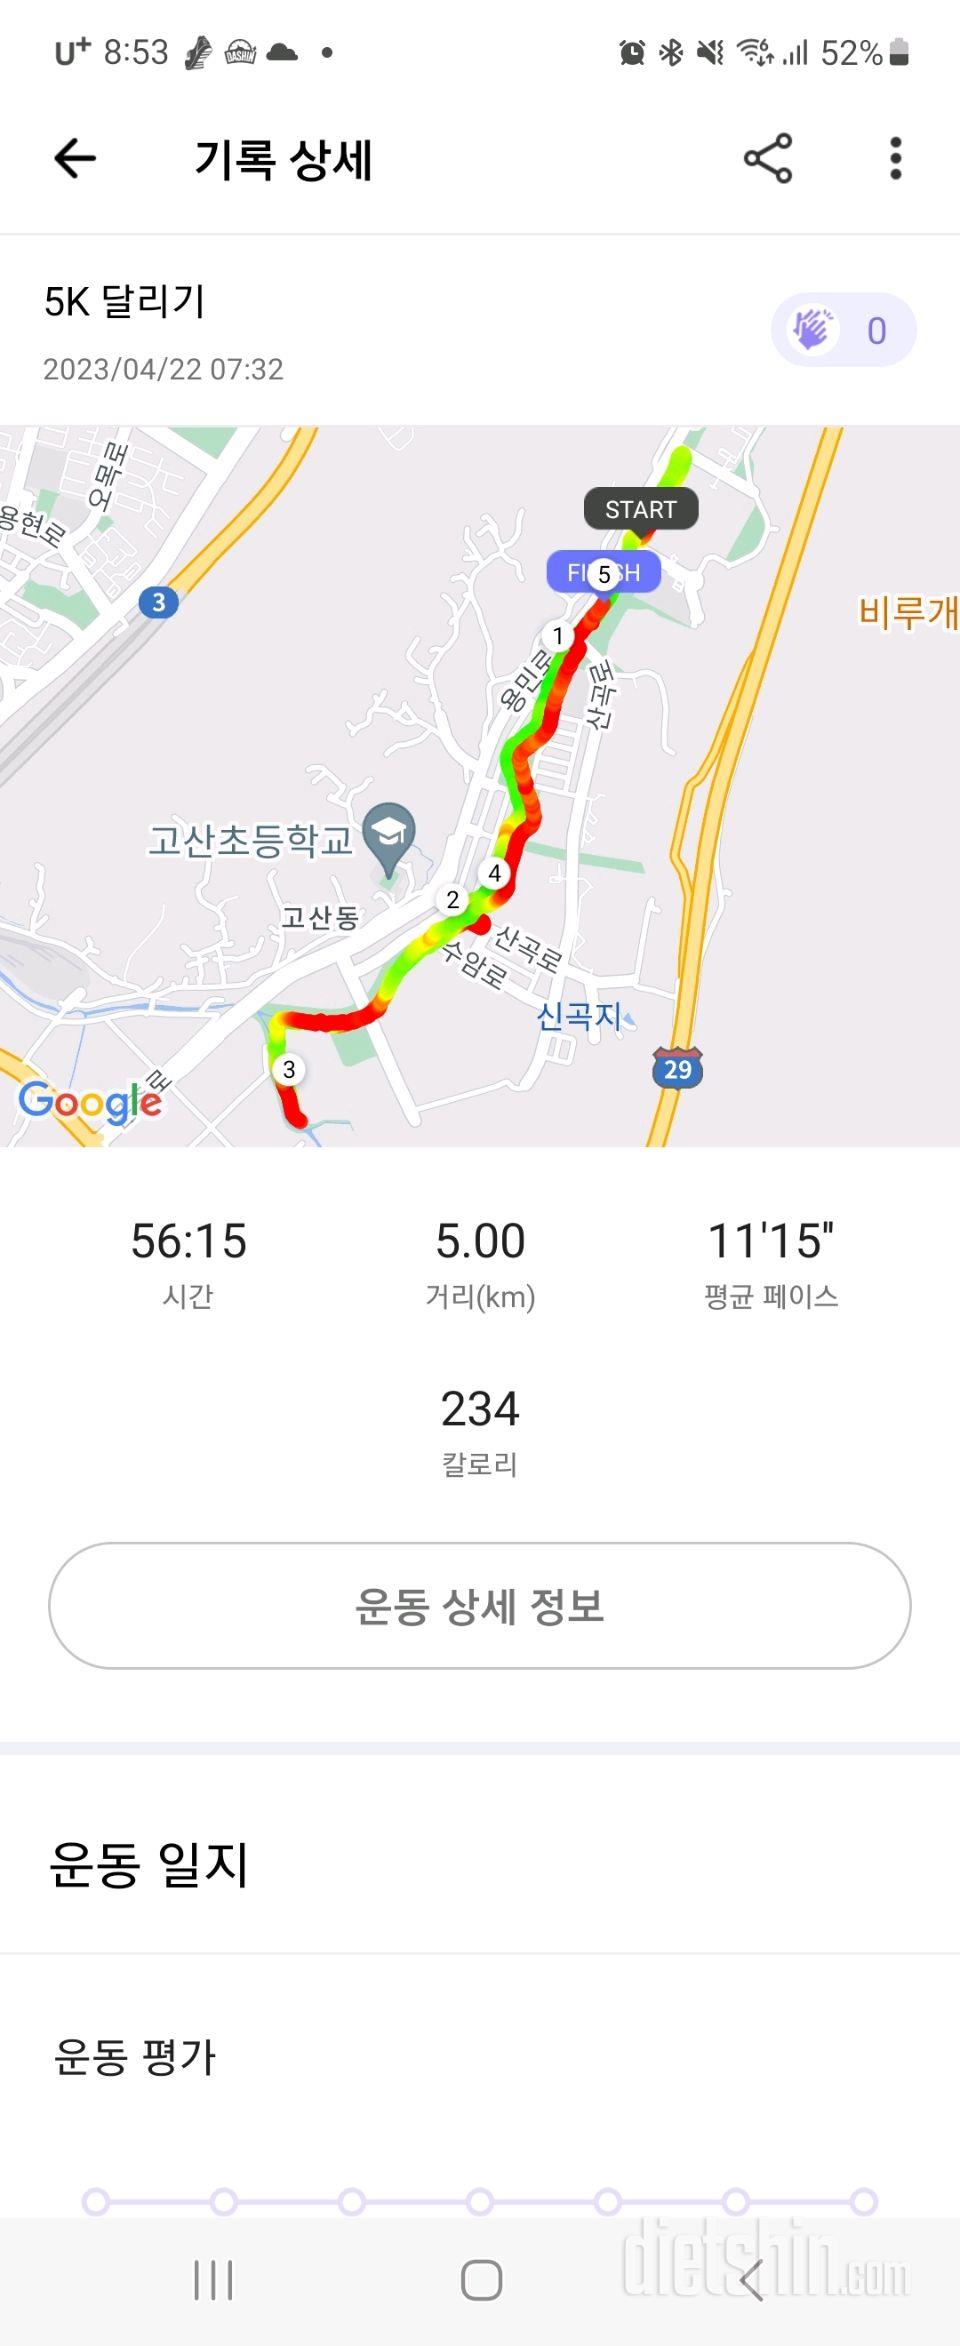 30일 유산소 운동2일차 성공!